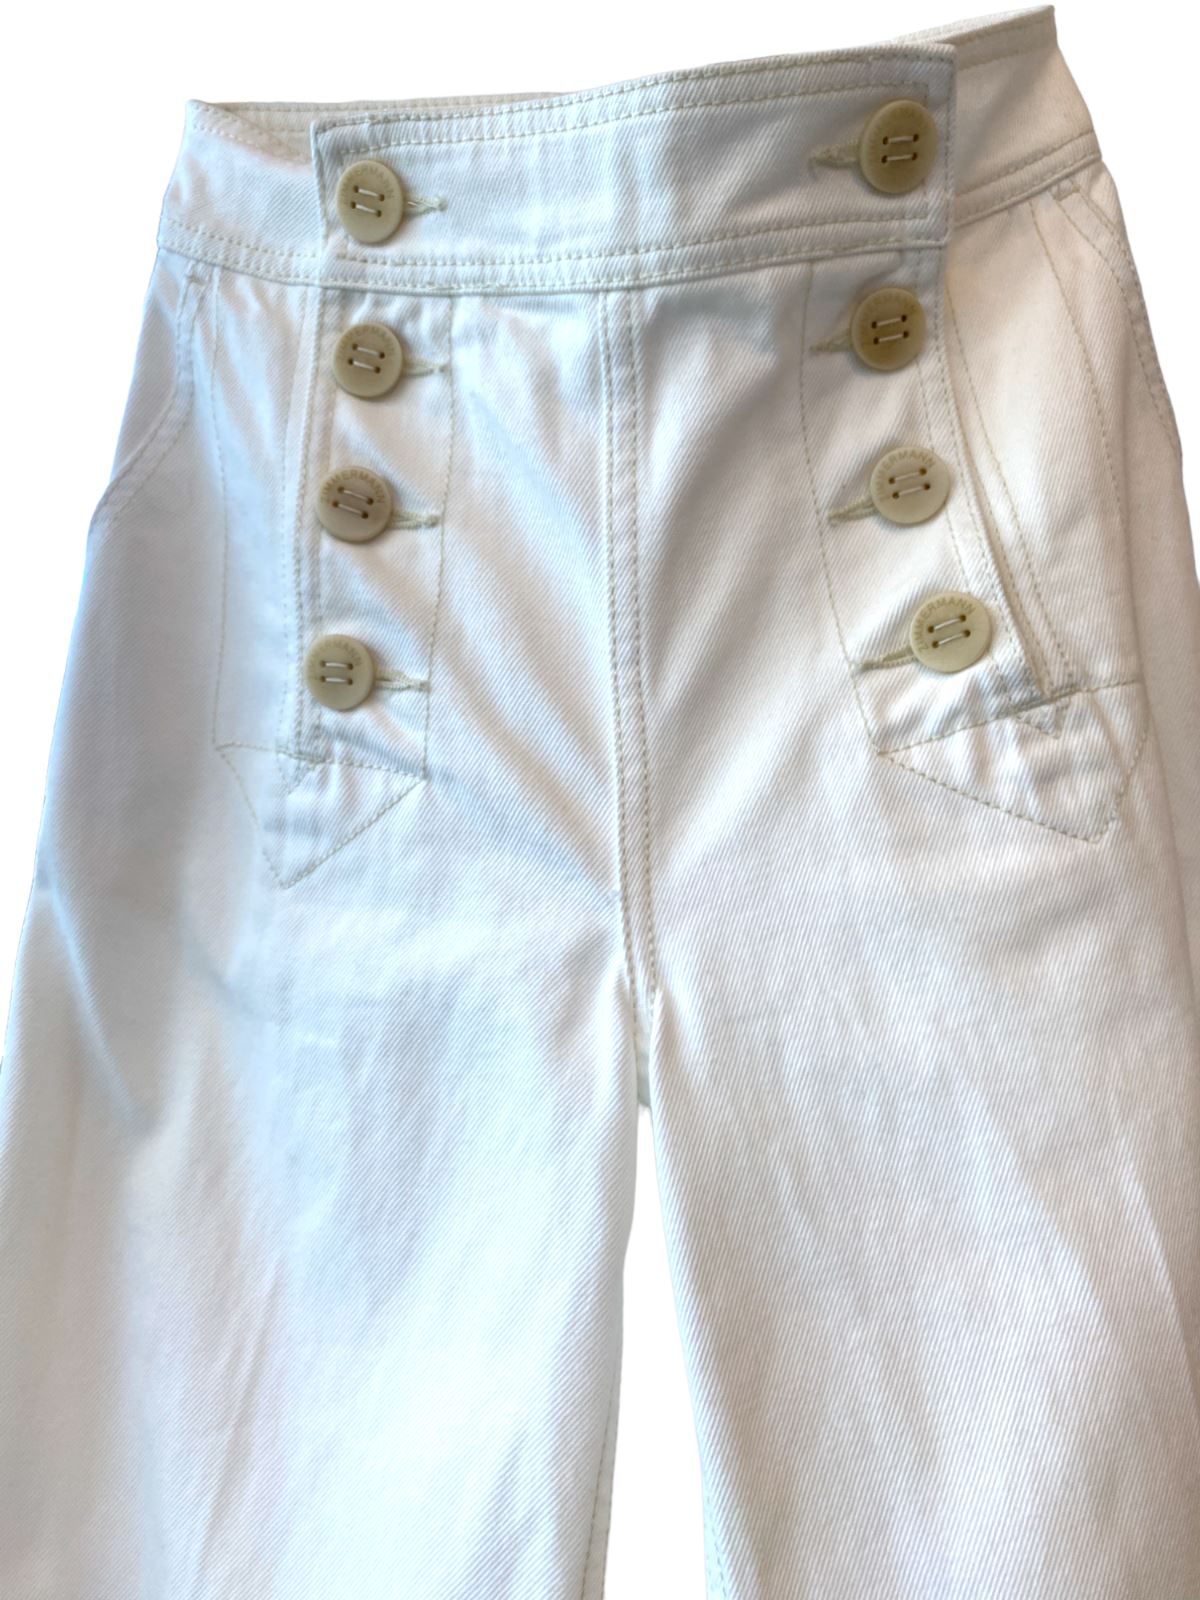 Zimmermann Postcard Wide Leg Jean | 100% Cotton, Button Detail, High Rise Waist